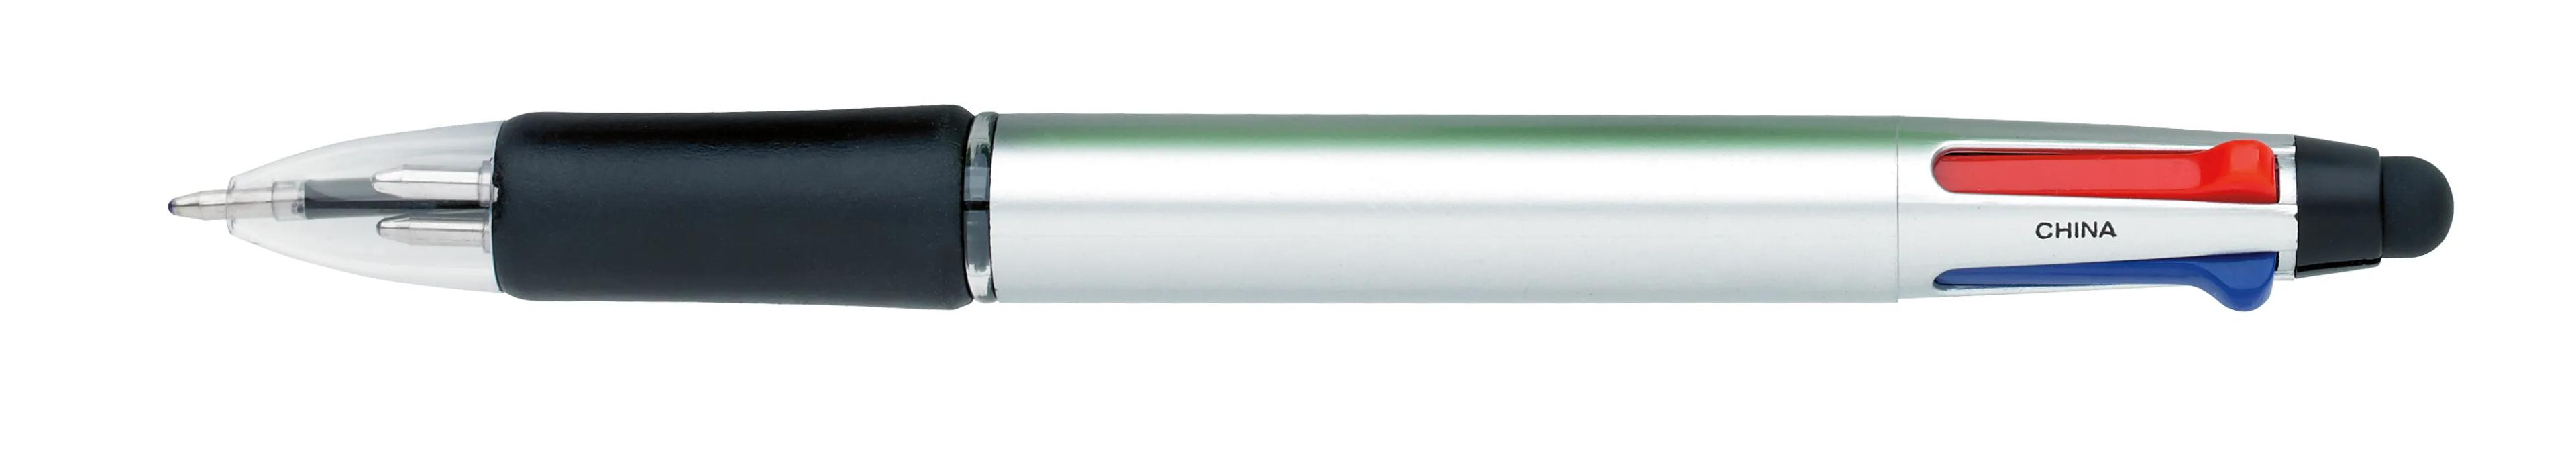 Orbitor Metallic Stylus Pen 1 of 56